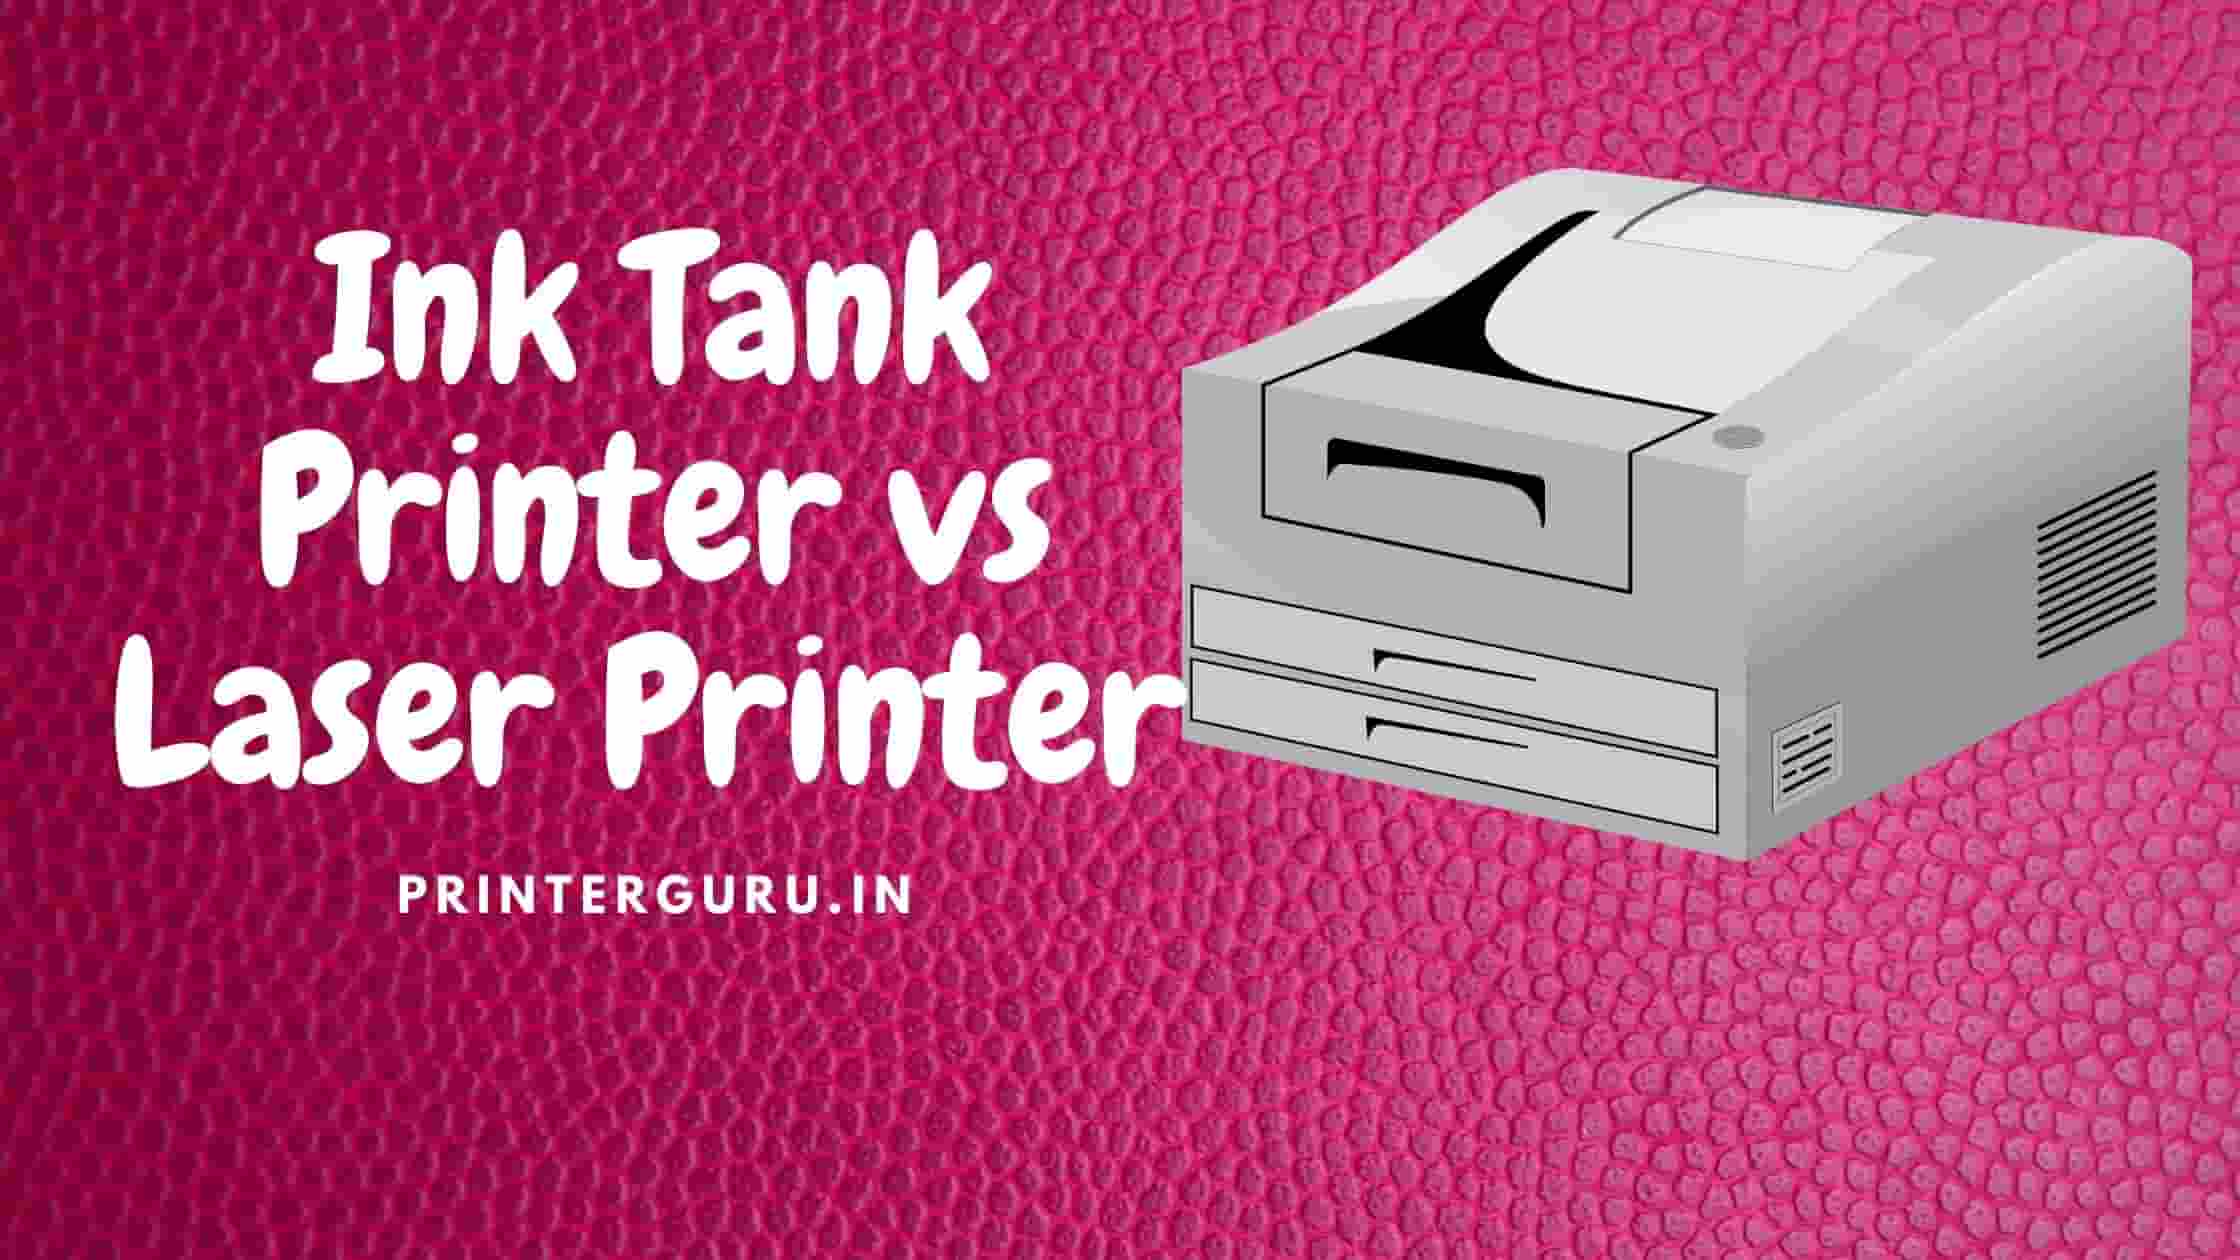 Ink Tank Printer vs Laser Printer